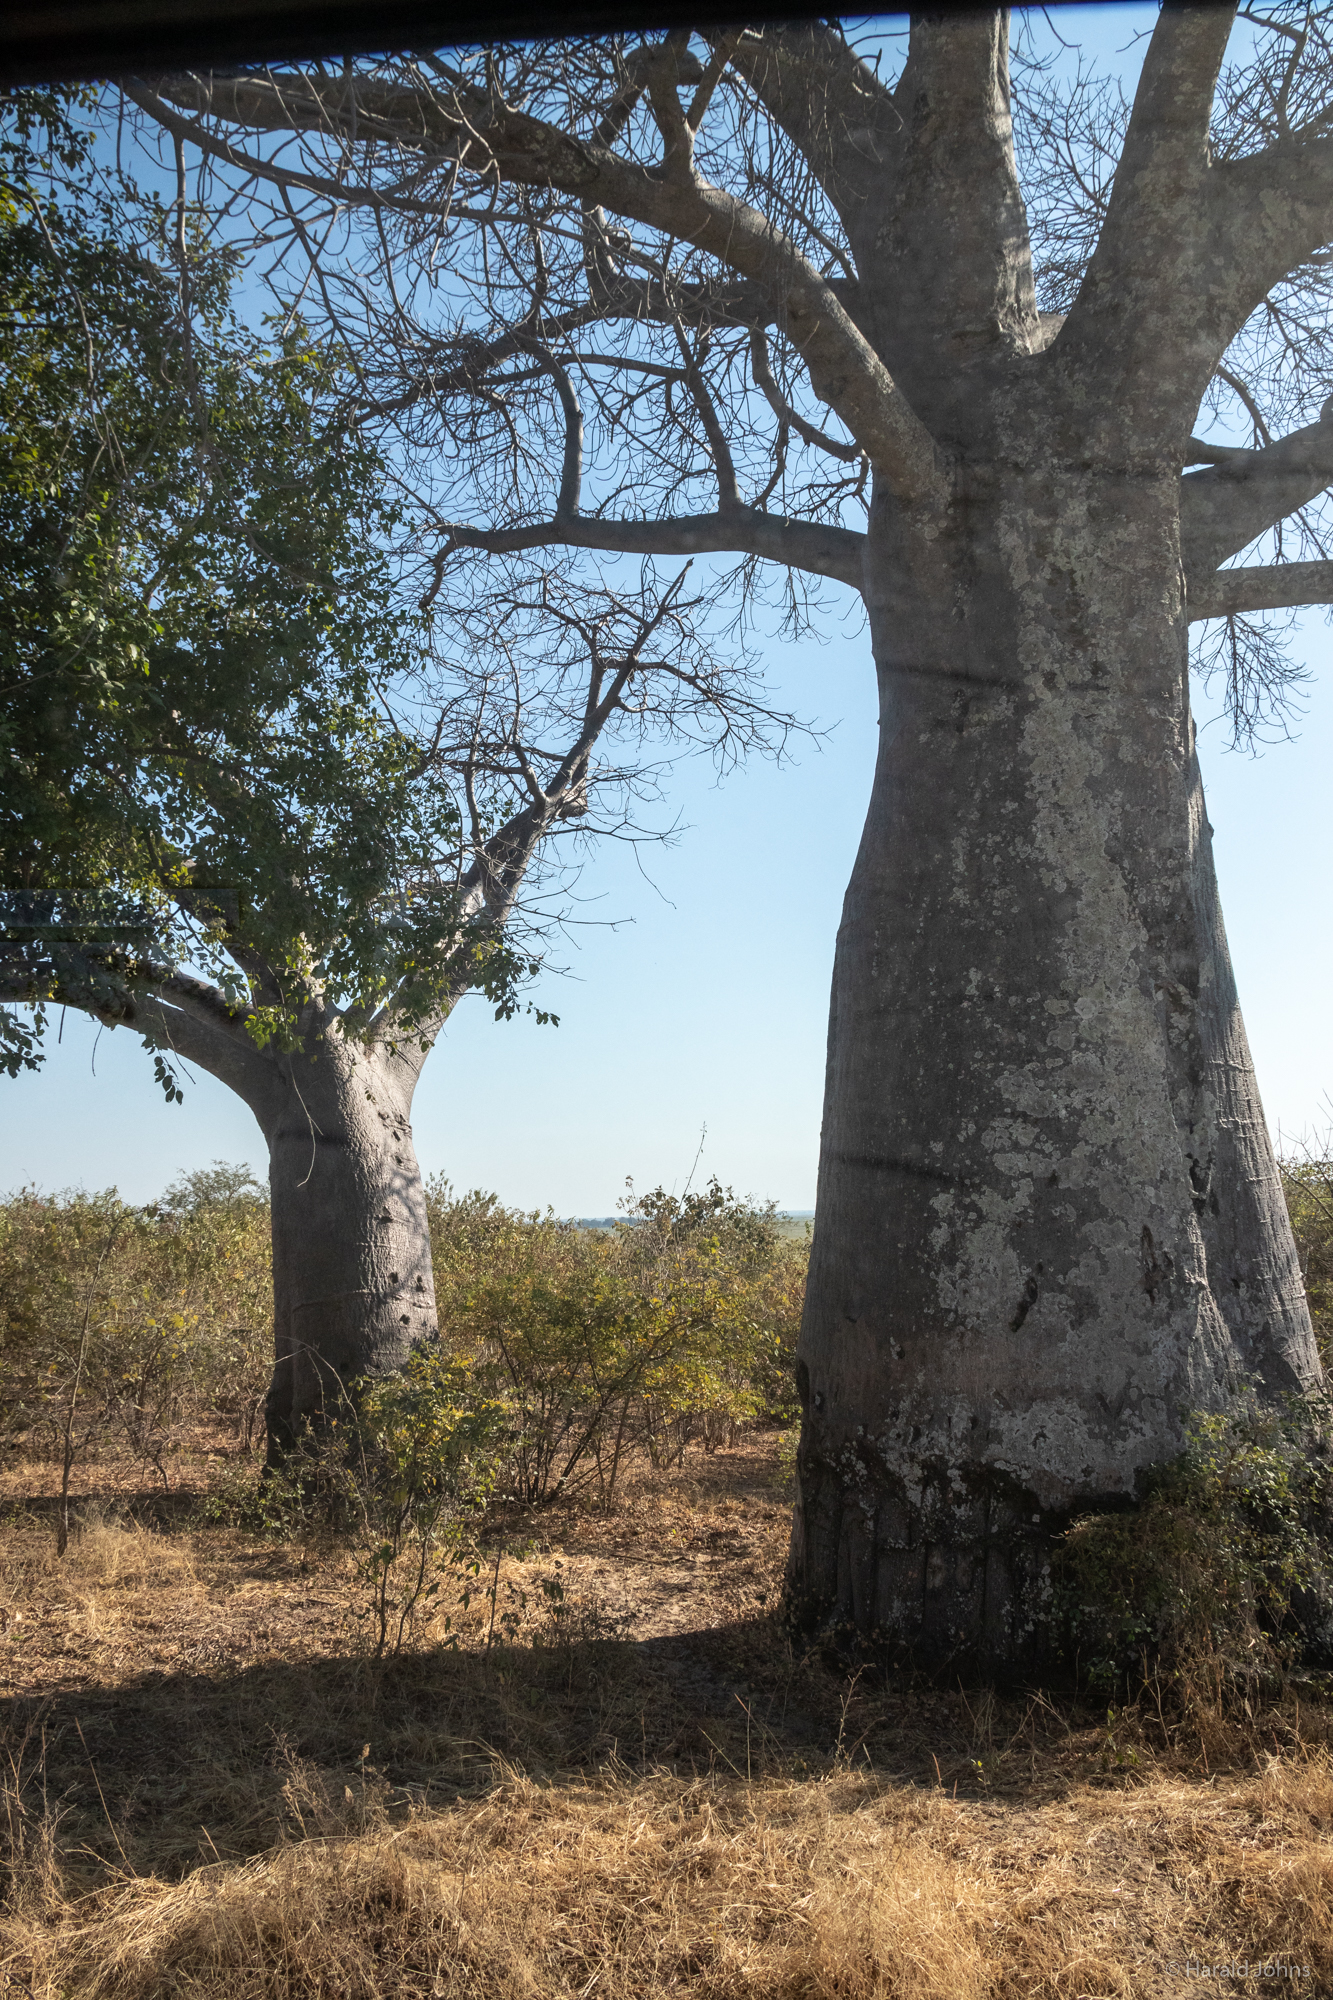 Gewaltige Affenbrotbäume (Baobab) mit ihren dicken Stämmen.